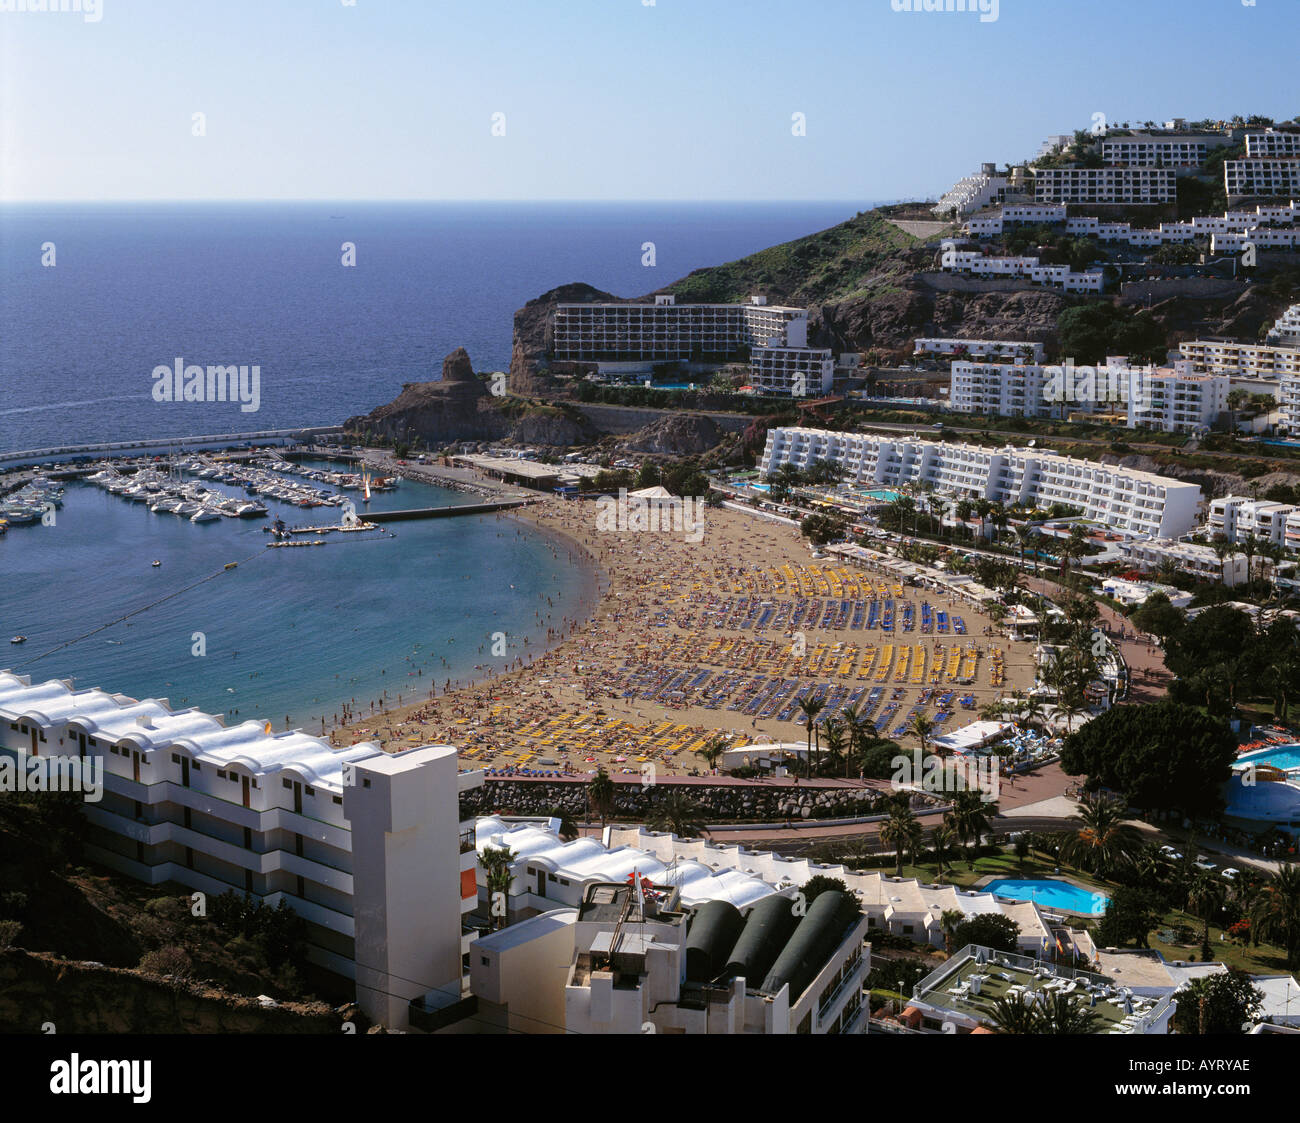 Badestrand, Hafenbucht, Ferienhotels, Apartments, Puerto Rico, Gran Canaria, Kanarische Inseln Stock Photo